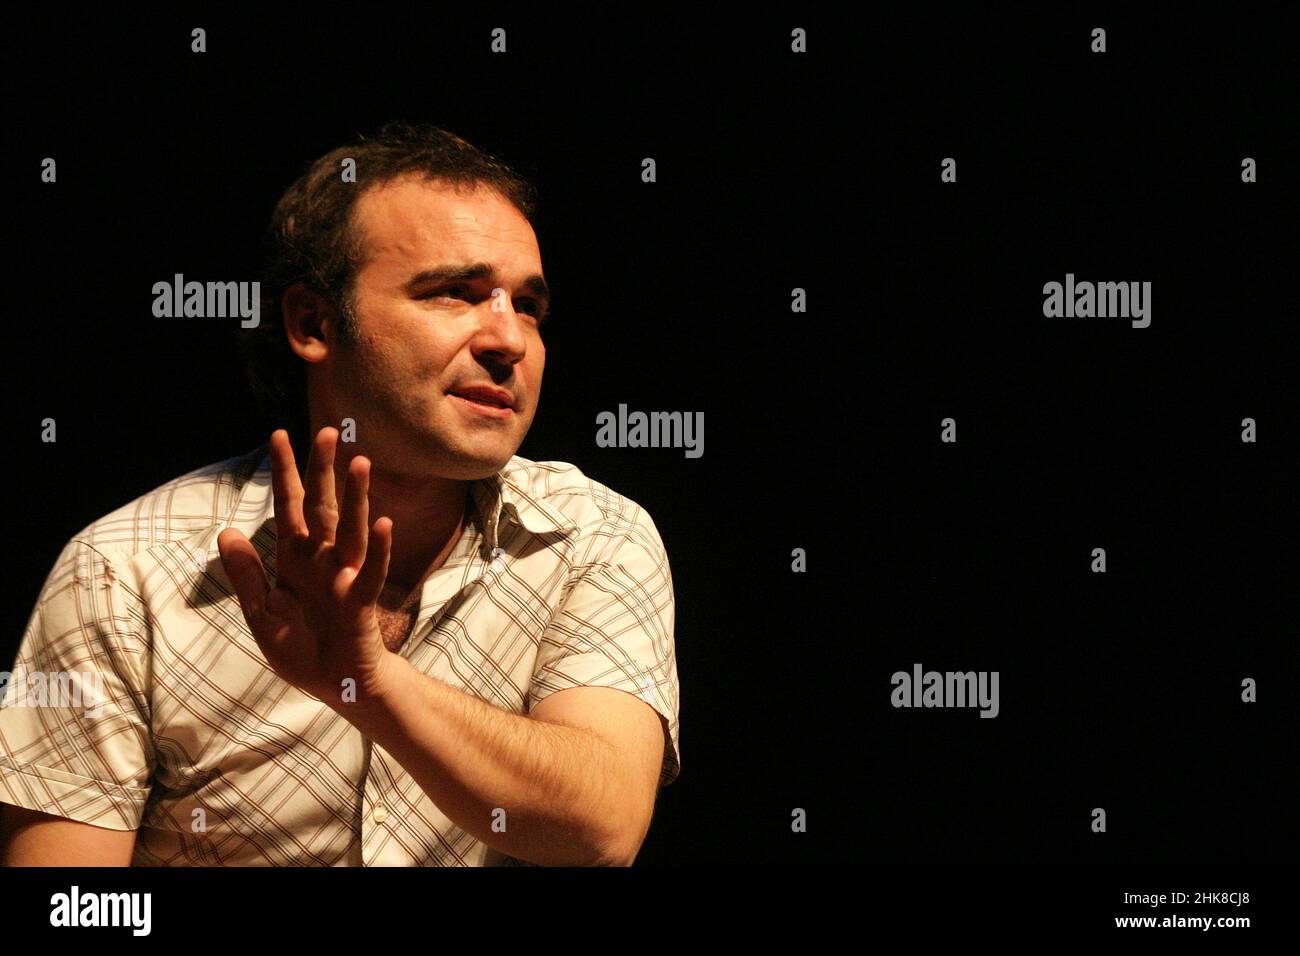 ISTANBUL, TÜRKEI - 28. MÄRZ: Der türkische Schauspieler, Komiker und Schauspieler Engin Gunaydin porträtiert am 28. März 2008 in Istanbul, Türkei. Stockfoto